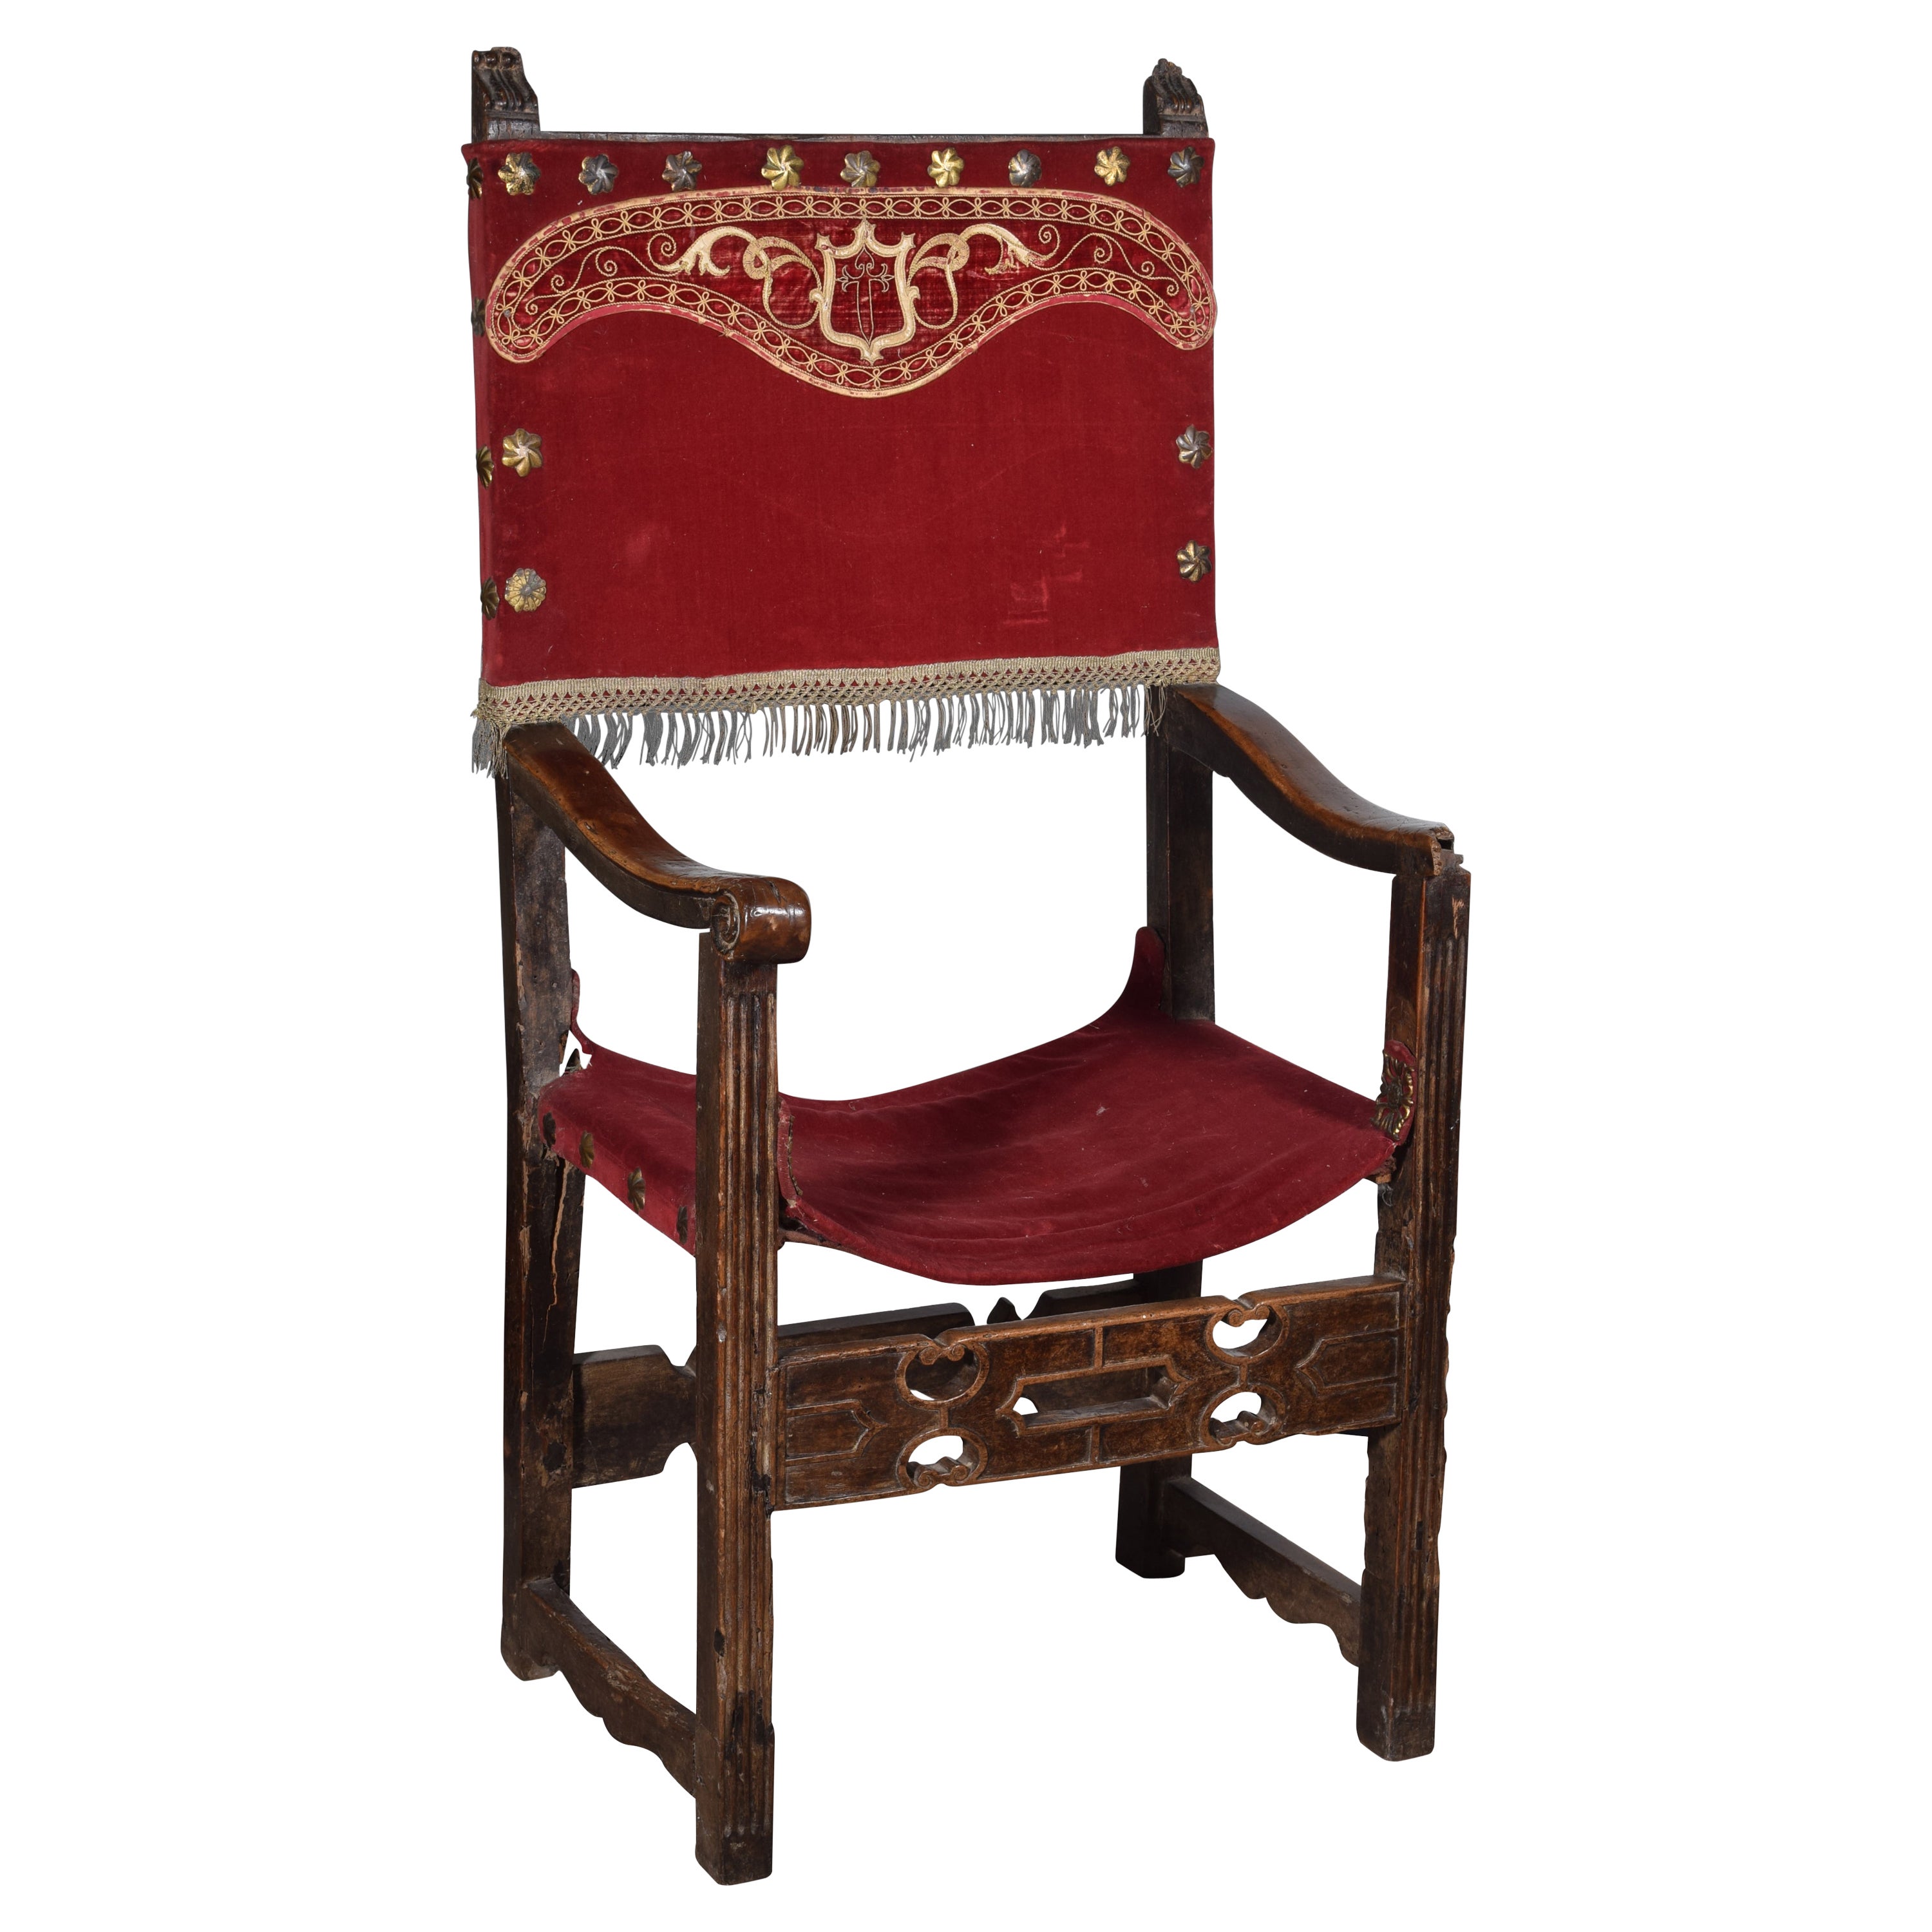 Friar armchair (frailero). Walnut wood, textile. Spain, 16th century.